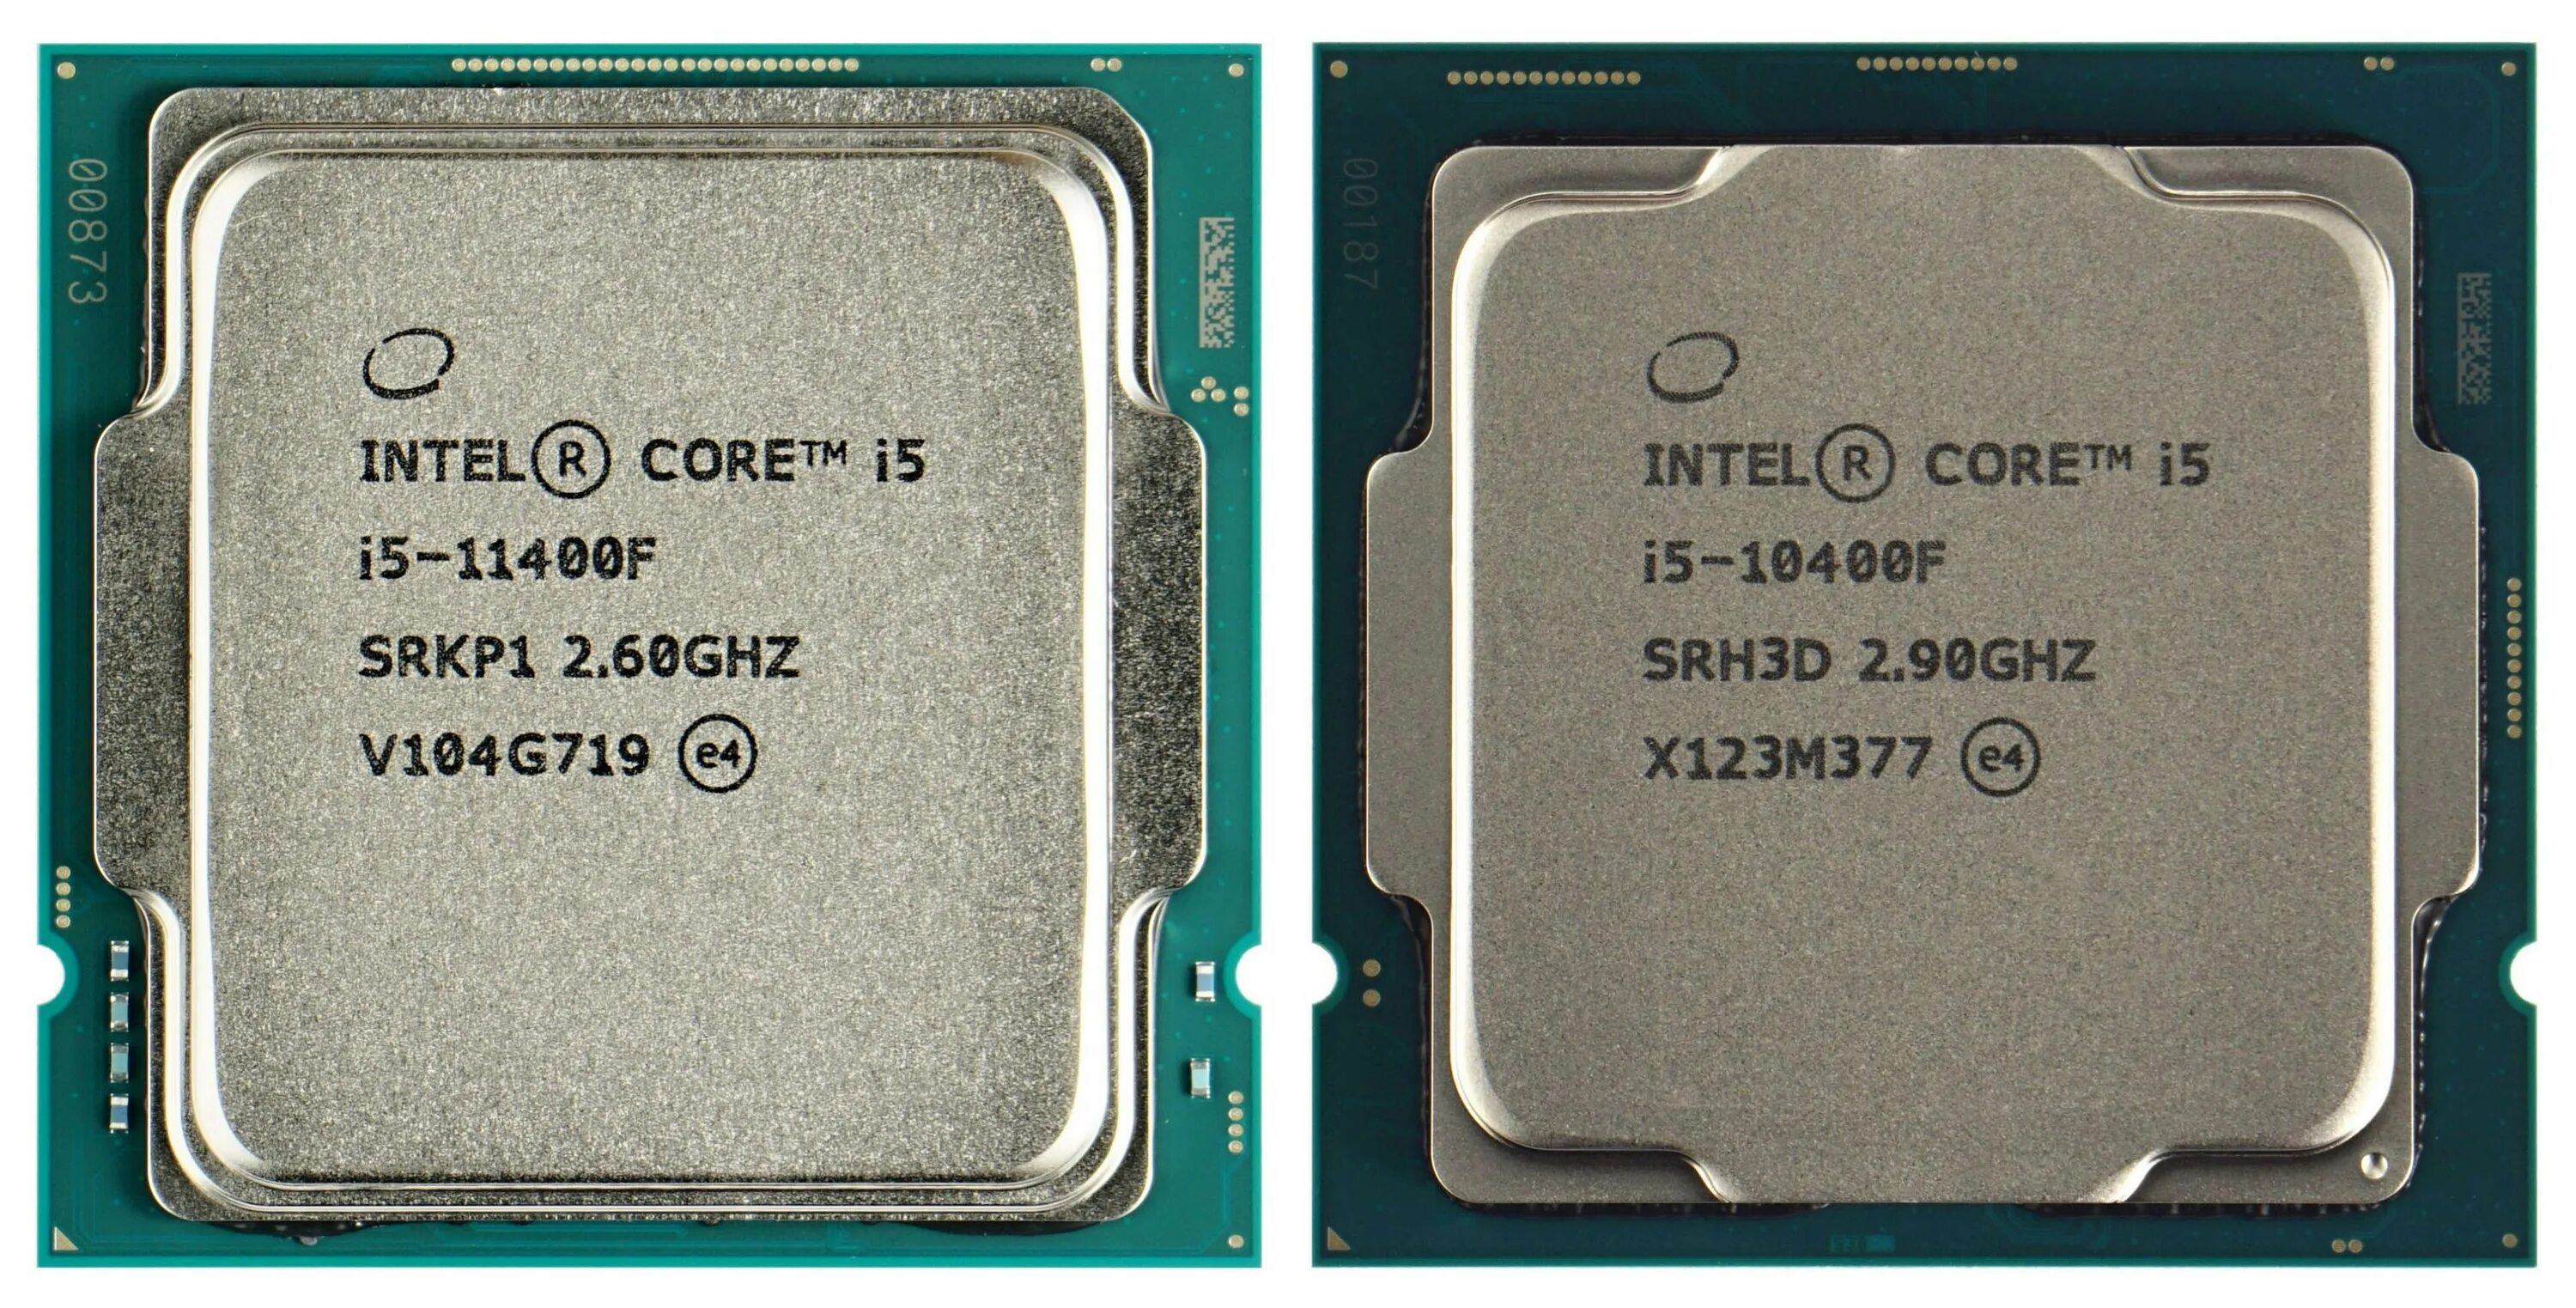 Intel i5 11400f. Процессор Intel Core i5-10400f. Intel Core i5-11400f. Процессор Intel Core i5-11400f OEM. I5 11400f сравнение